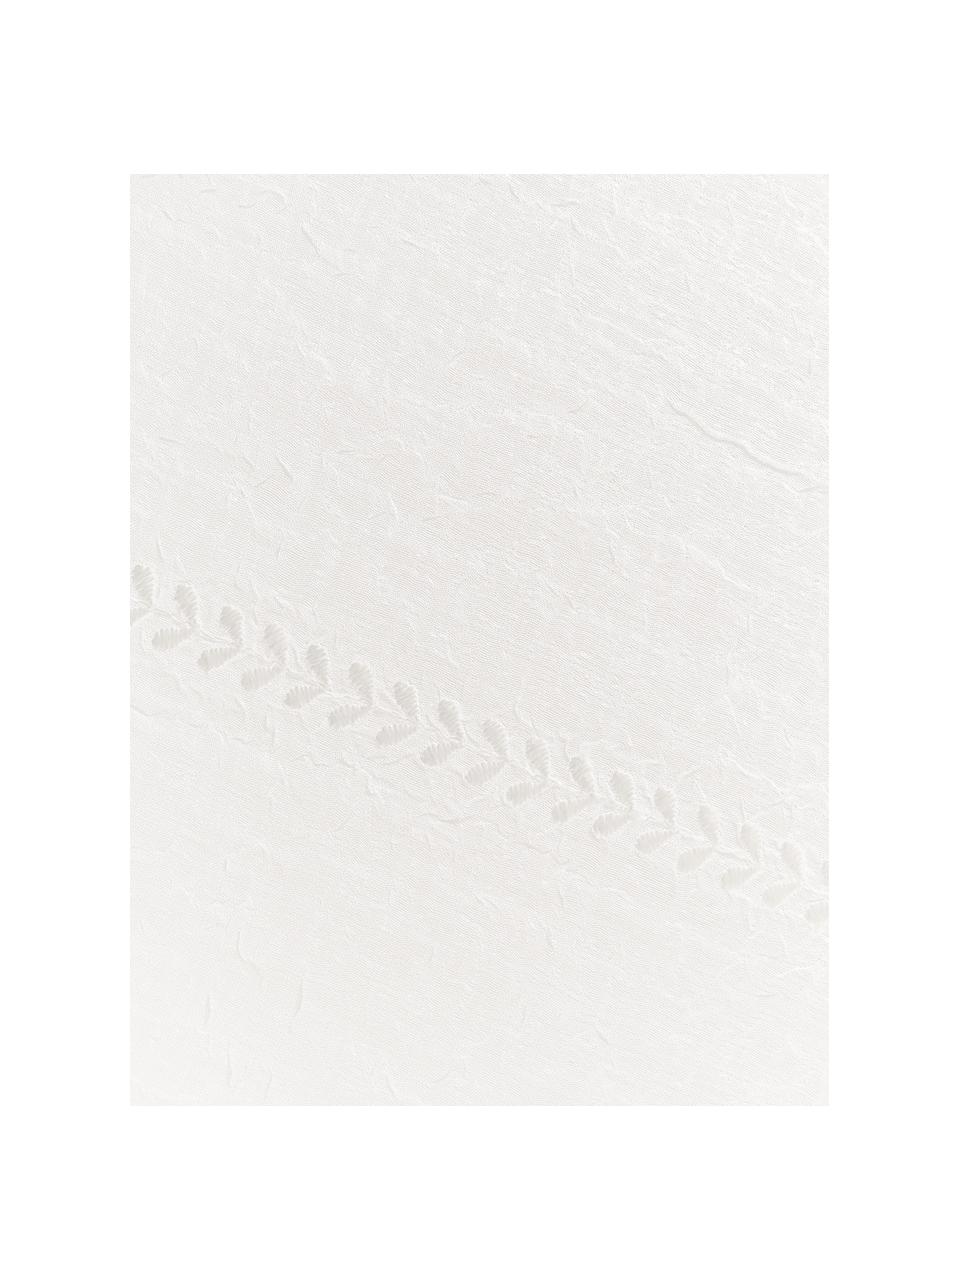 Bestickte Tischdecke Bilia mit gewelltem Saum, 100 % Polyester, Gebrochenes Weiß, 8-10 Personen (L 320 x B 160 cm)